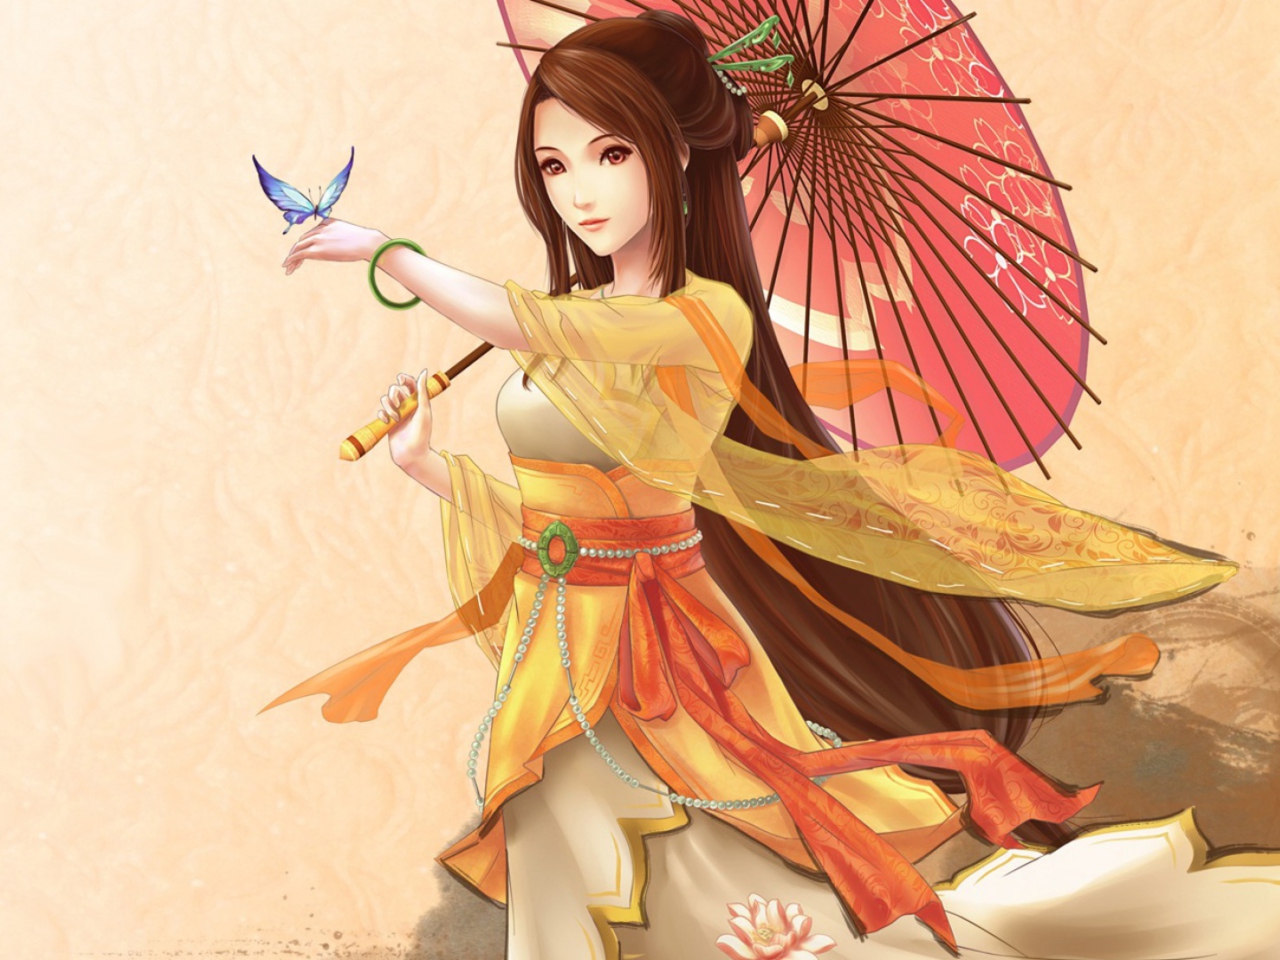 Sfondi Japanese Woman & Butterfly 1280x960